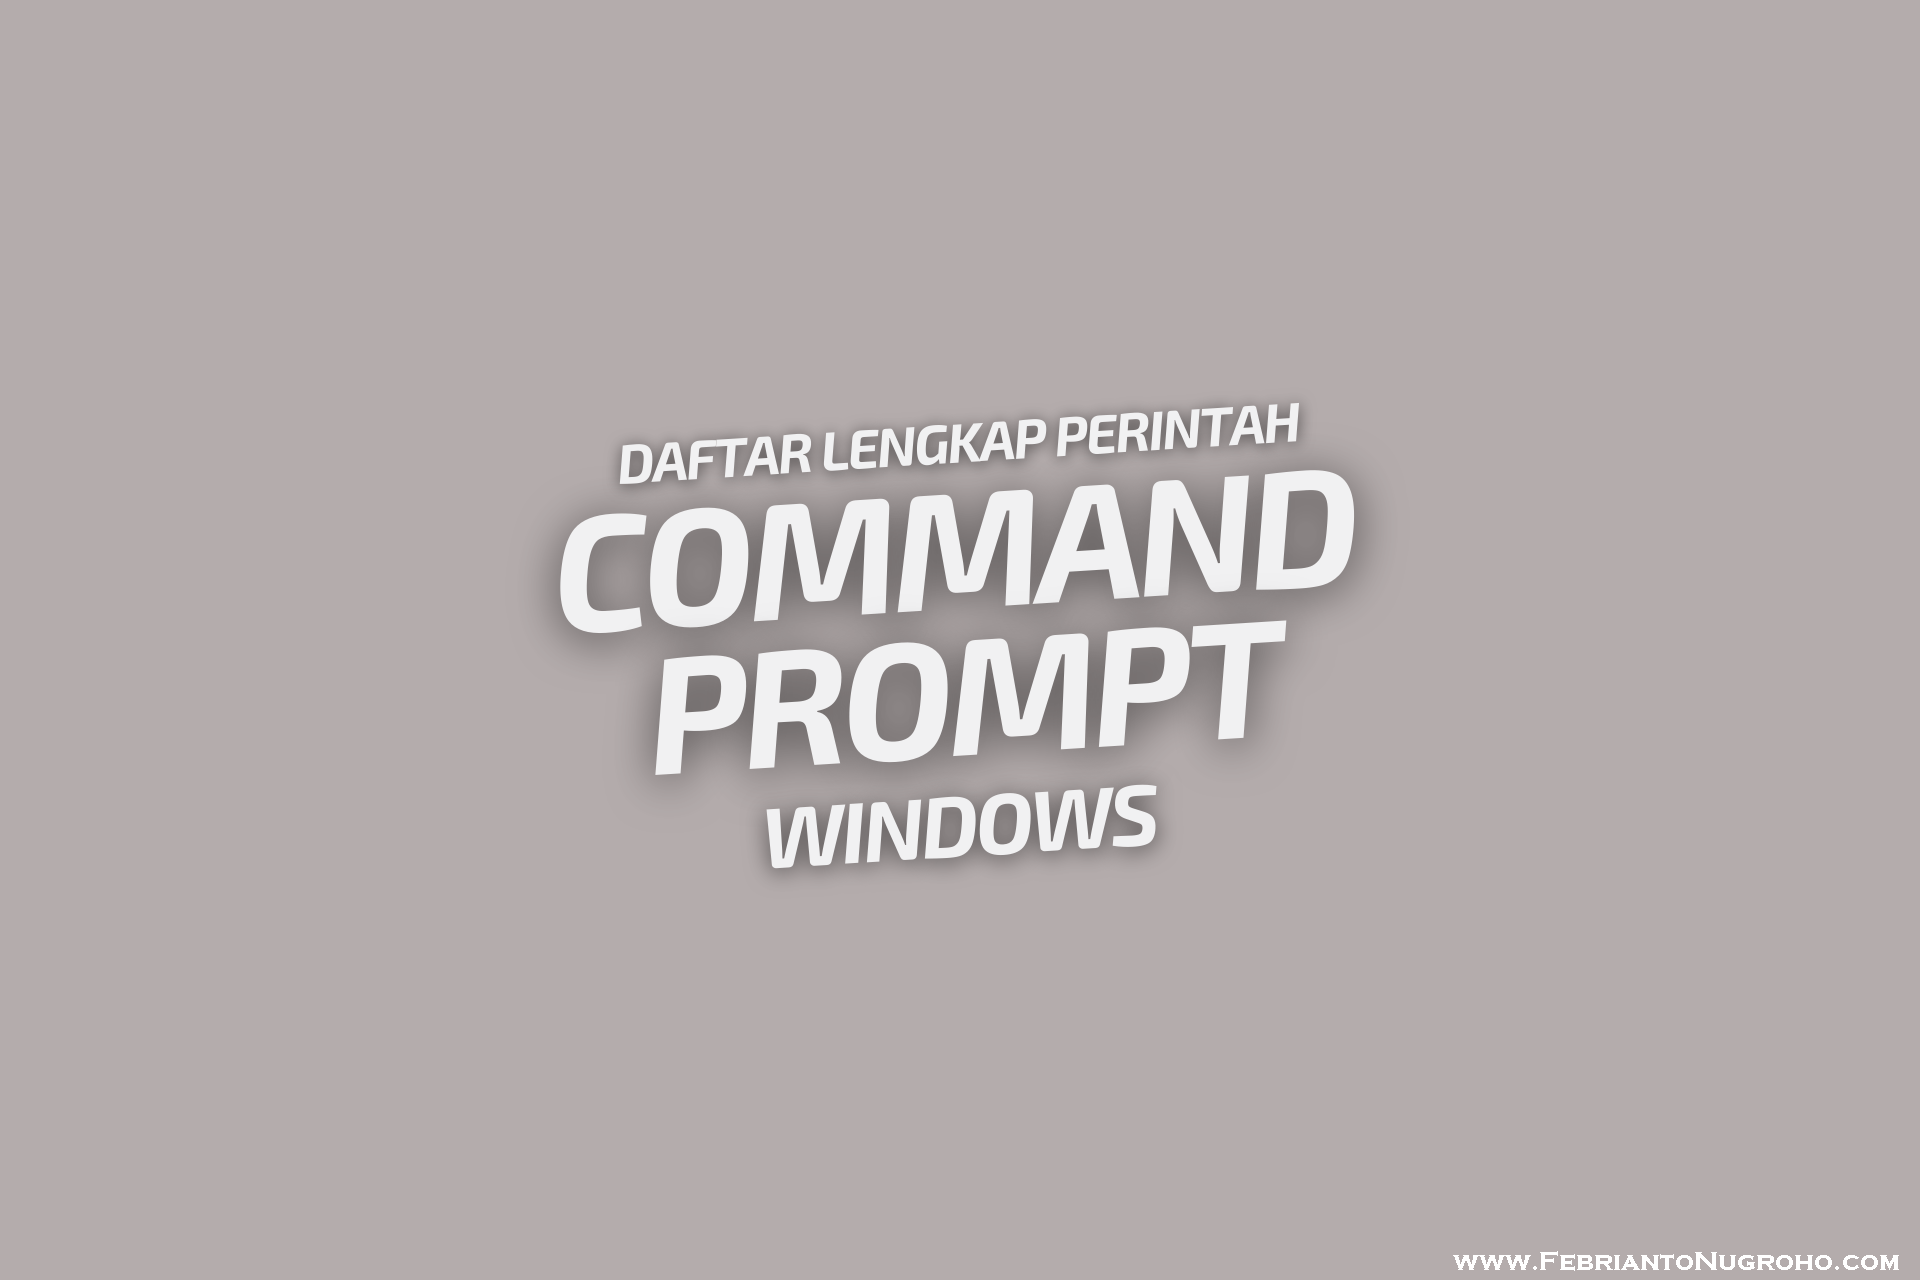 Daftar Lengkap Perintah Command Prompt